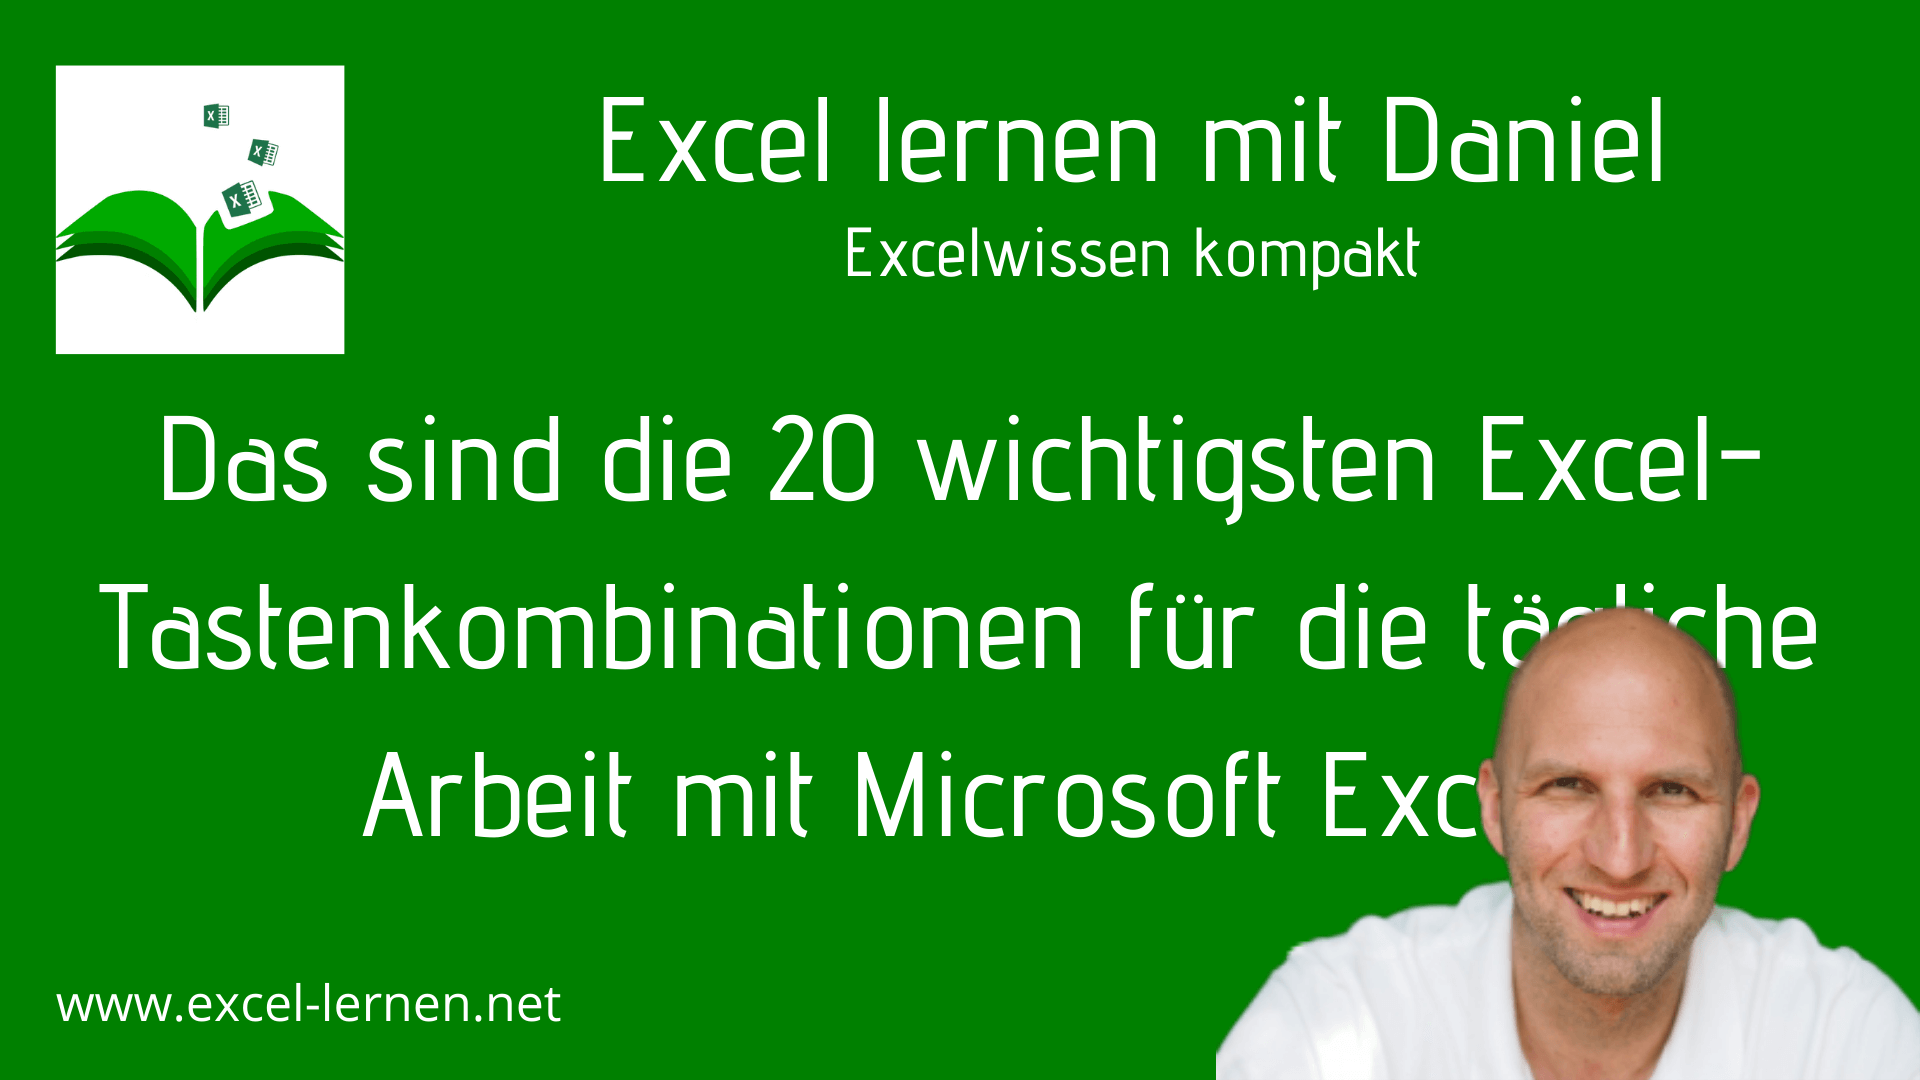 Das sind die 20 wichtigsten Excel-Tastenkombinationen für die tägliche Arbeit mit Microsoft Excel